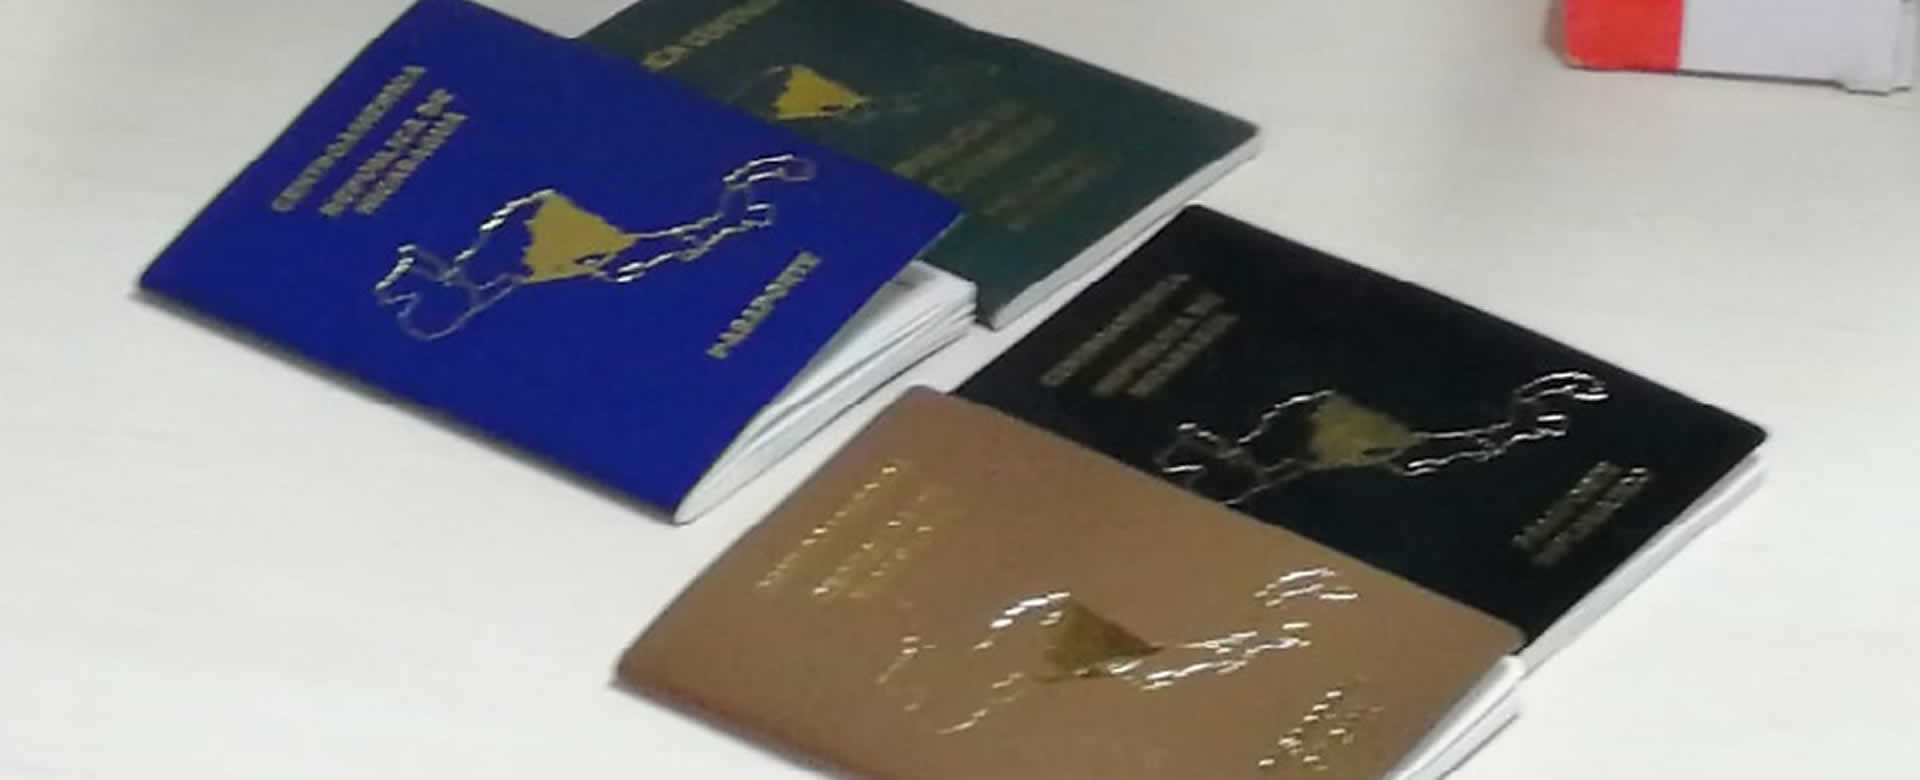 Migración y Extranjería informa sobre tramites de pasaportes en menores